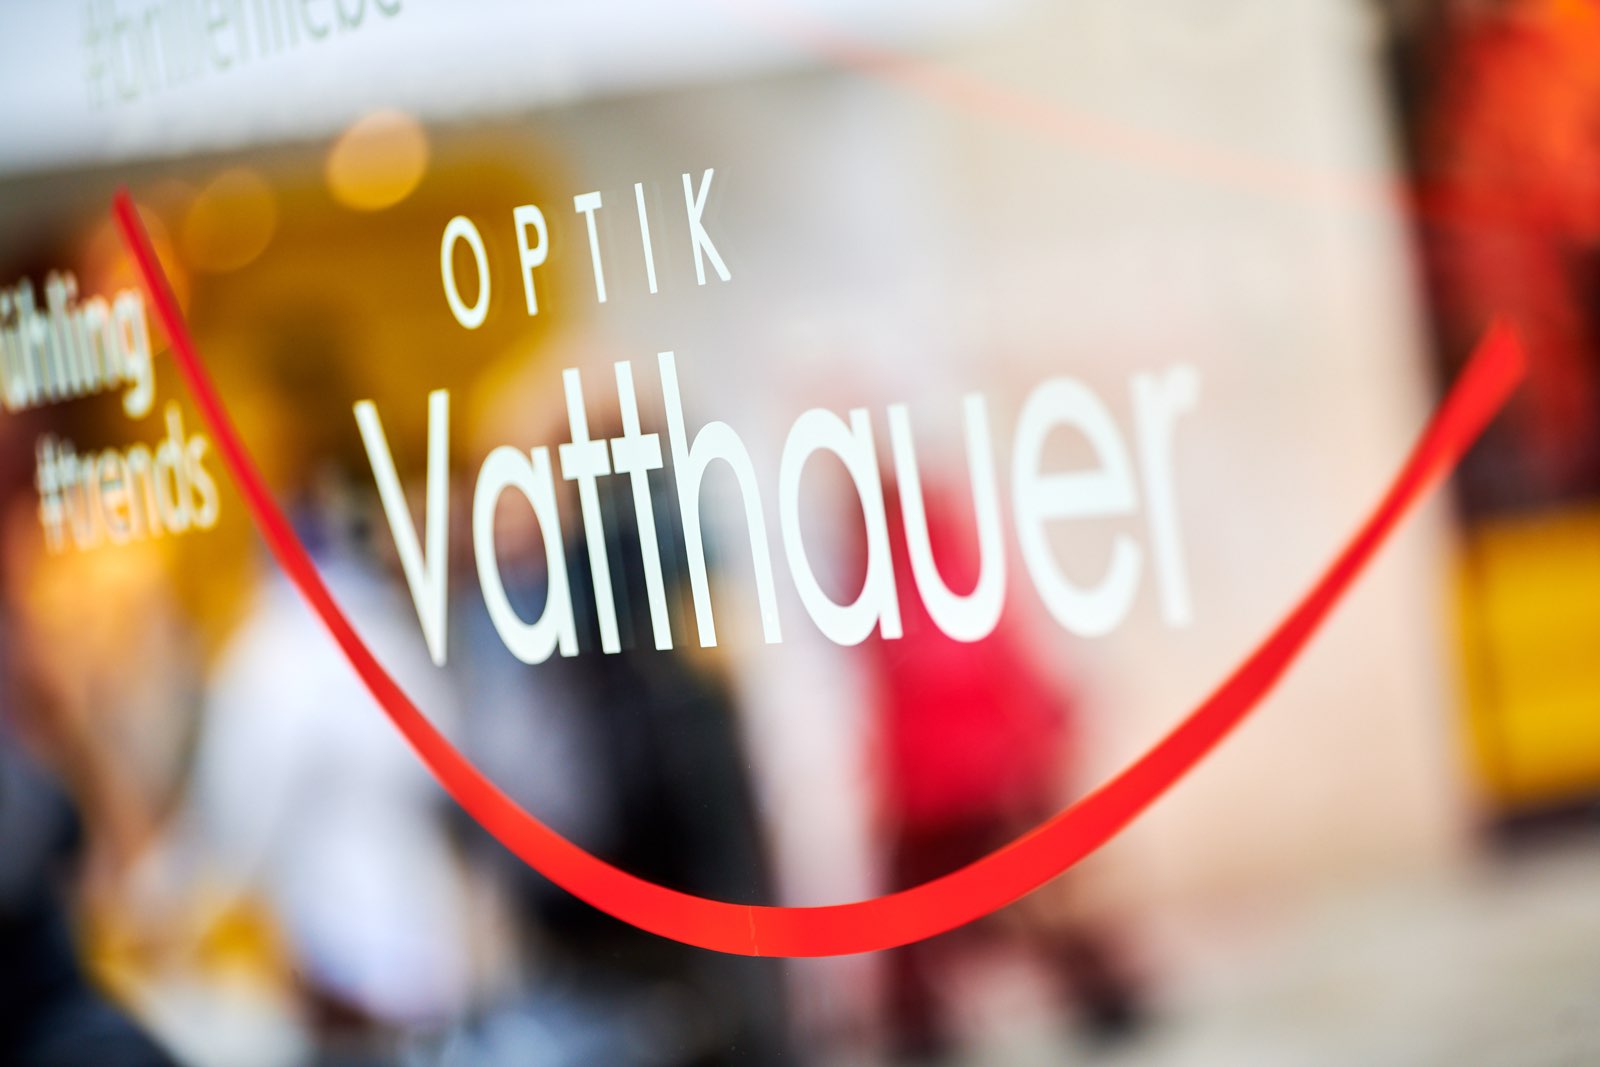 Optik Vatthauer Osnabrück